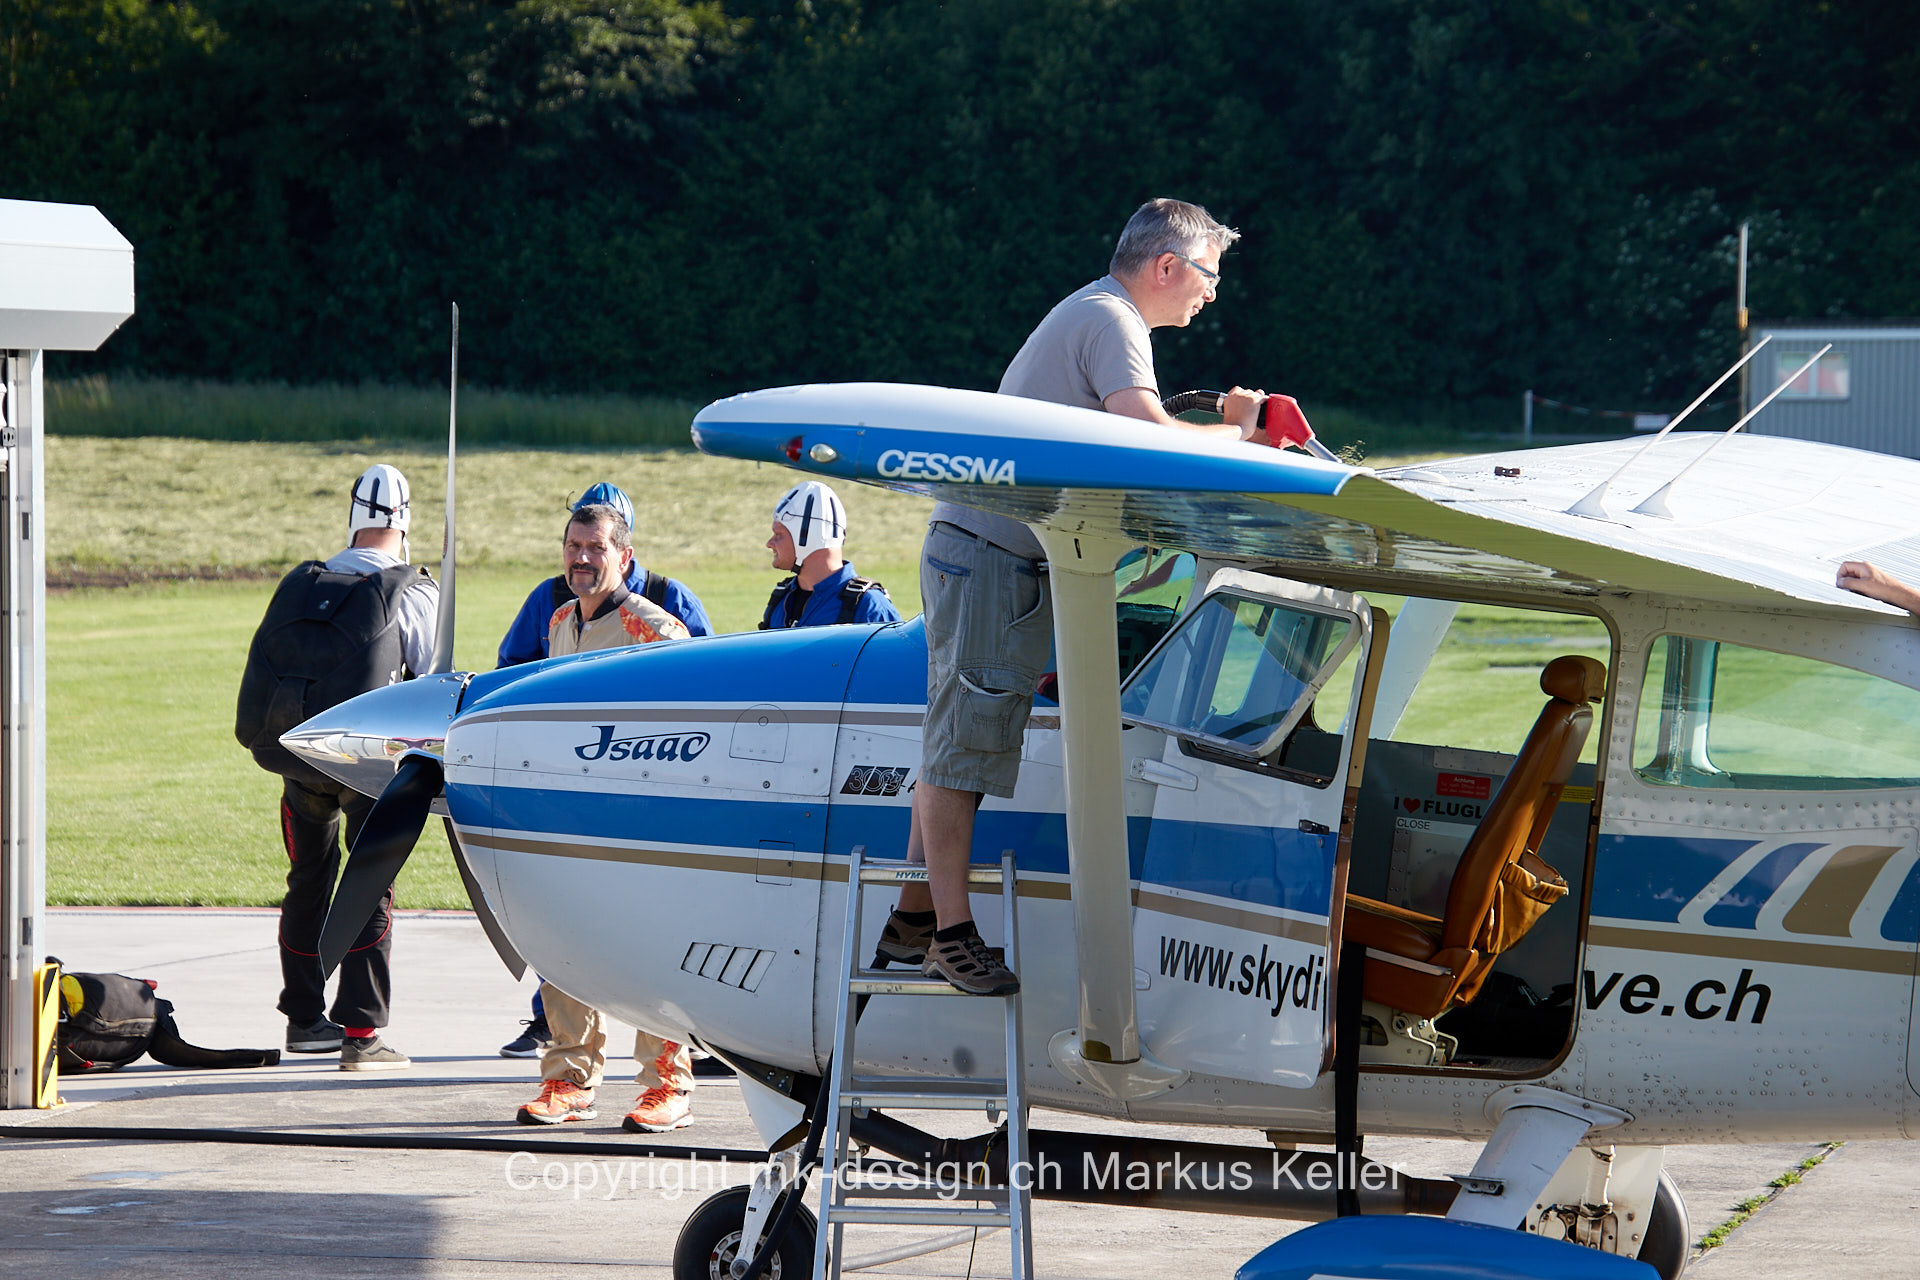 Flugzeug   Mensch   Gruppe   Cessna   